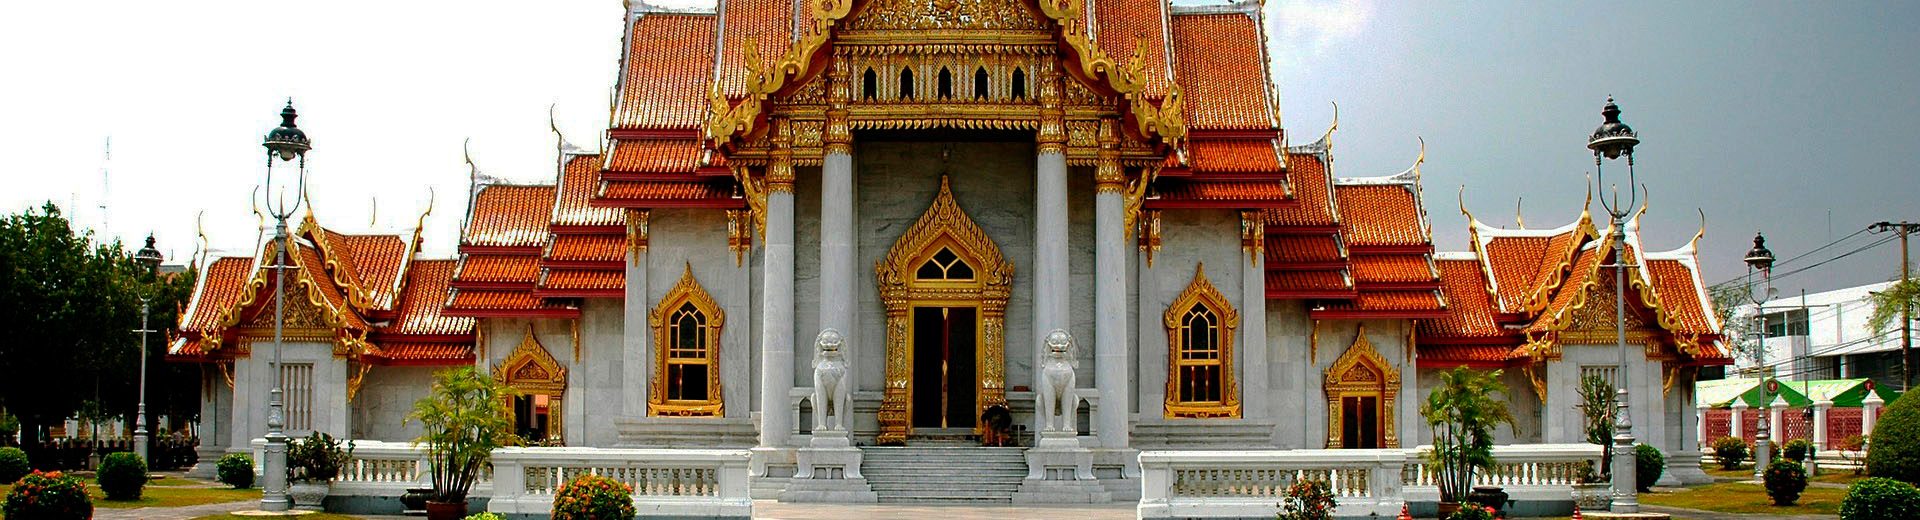 Roteiro de viagem para Indochina: muitos templos para conhecer